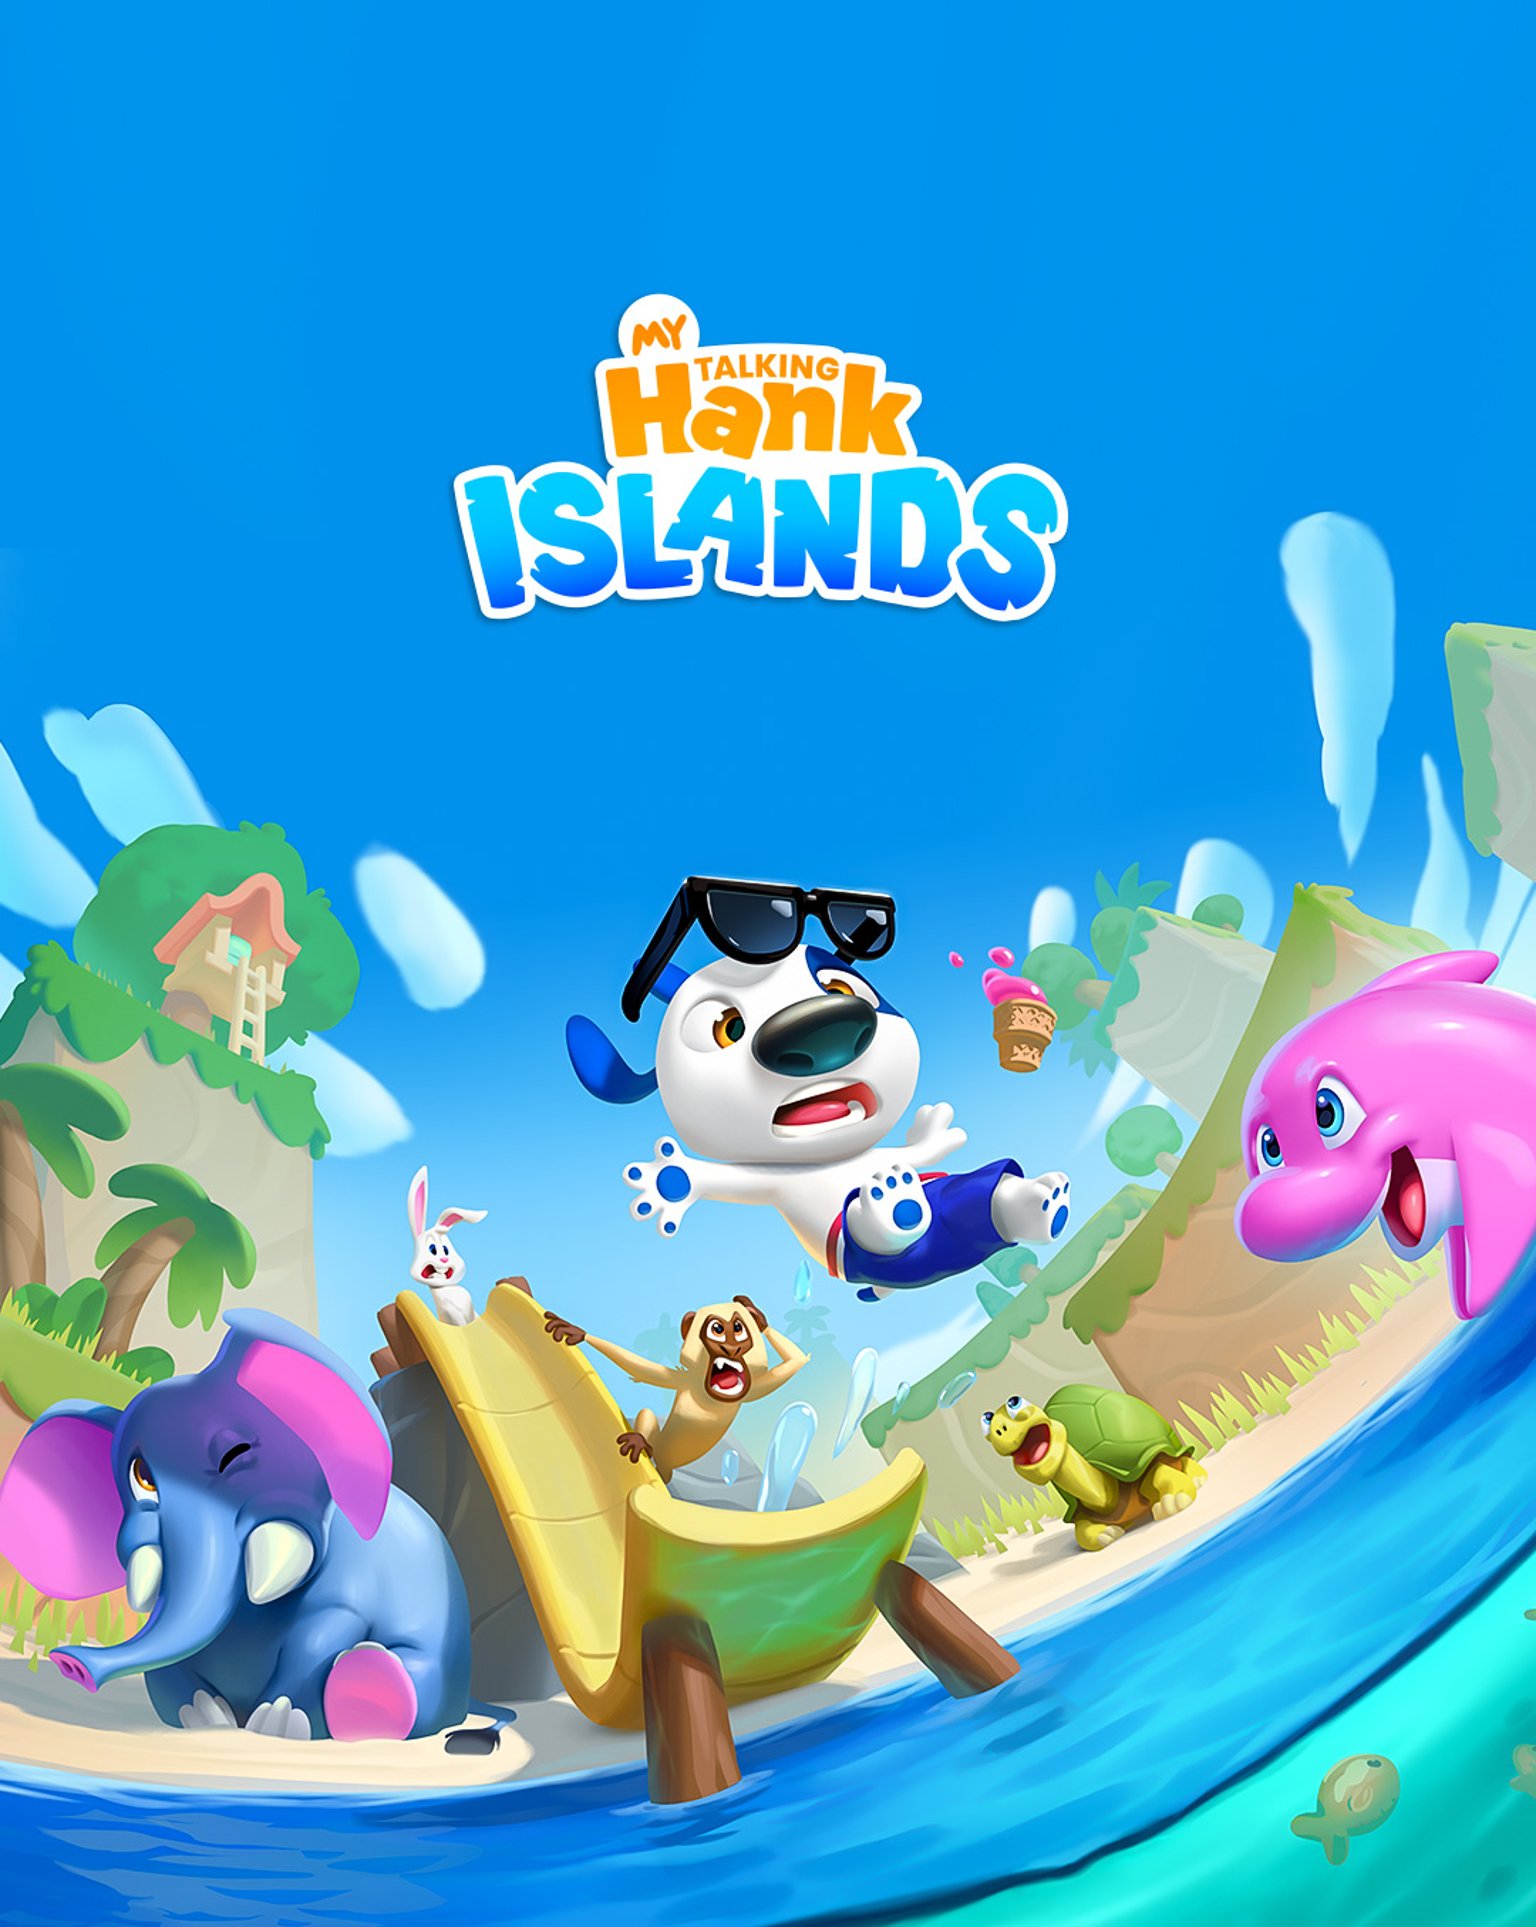 My Talking Hank: Islands Arrives July 4th!